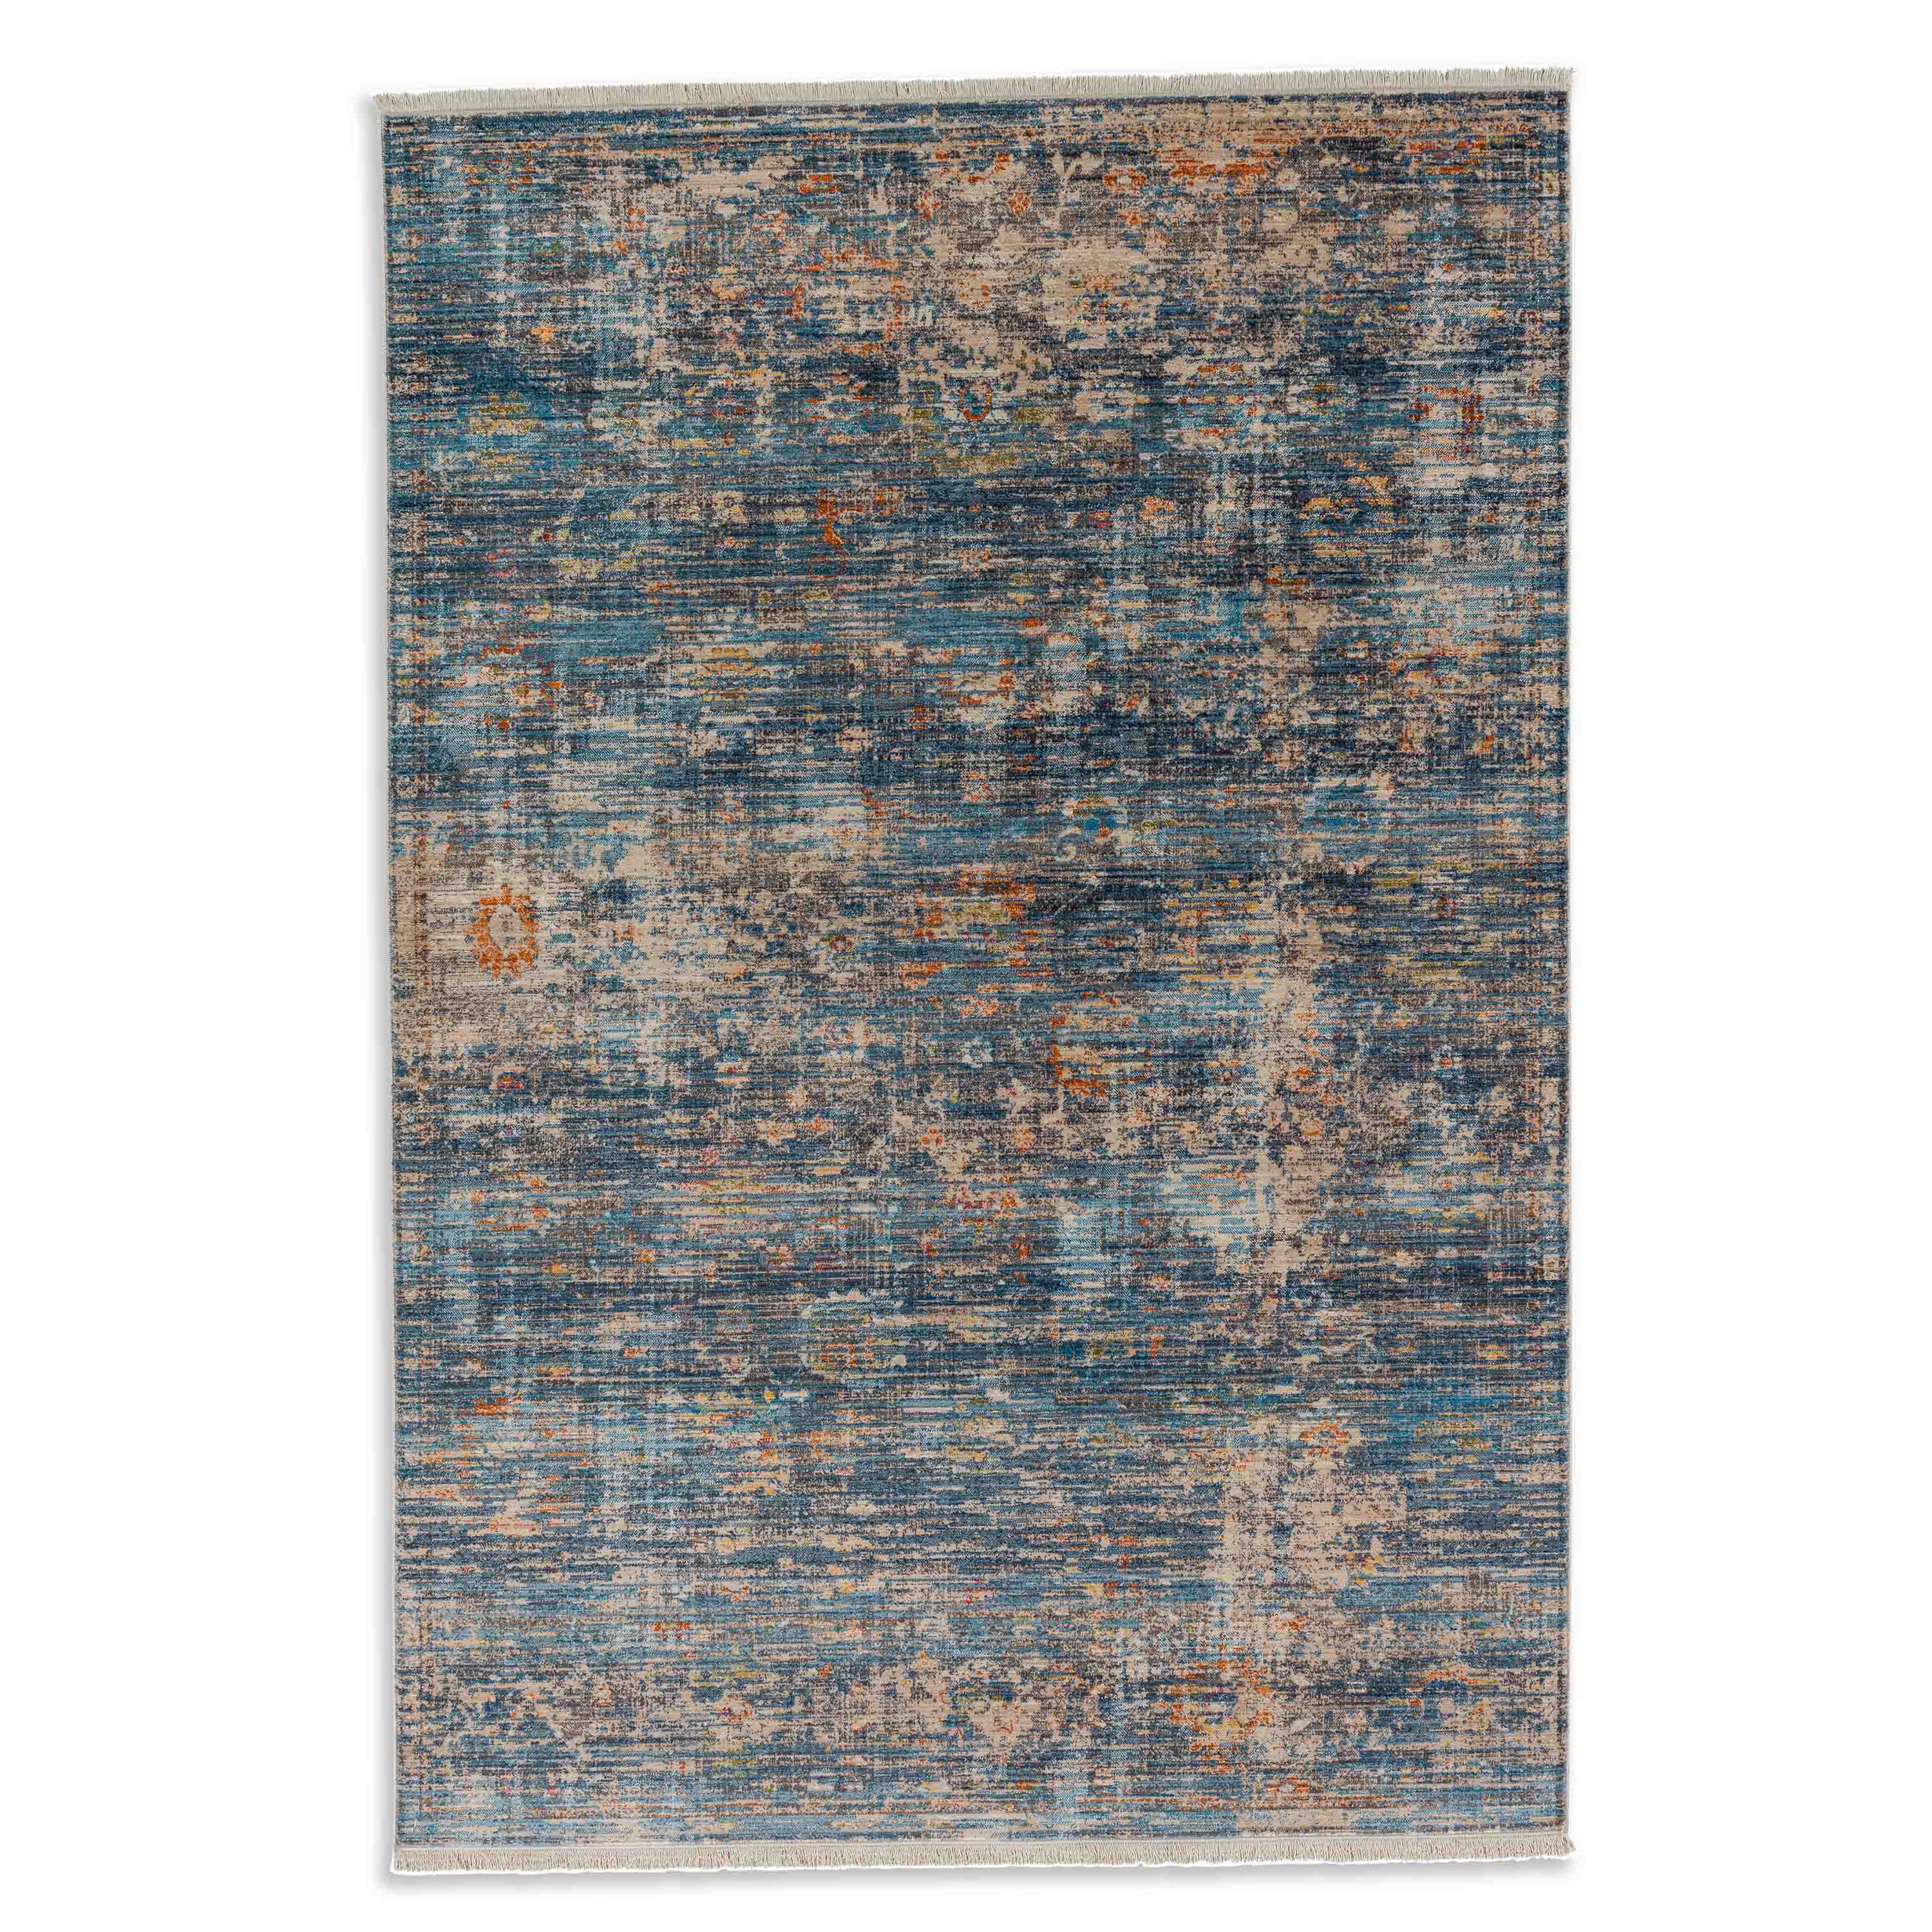 Schöner Wohnen Kollektion Teppich Mystik 70x140 cm Blau